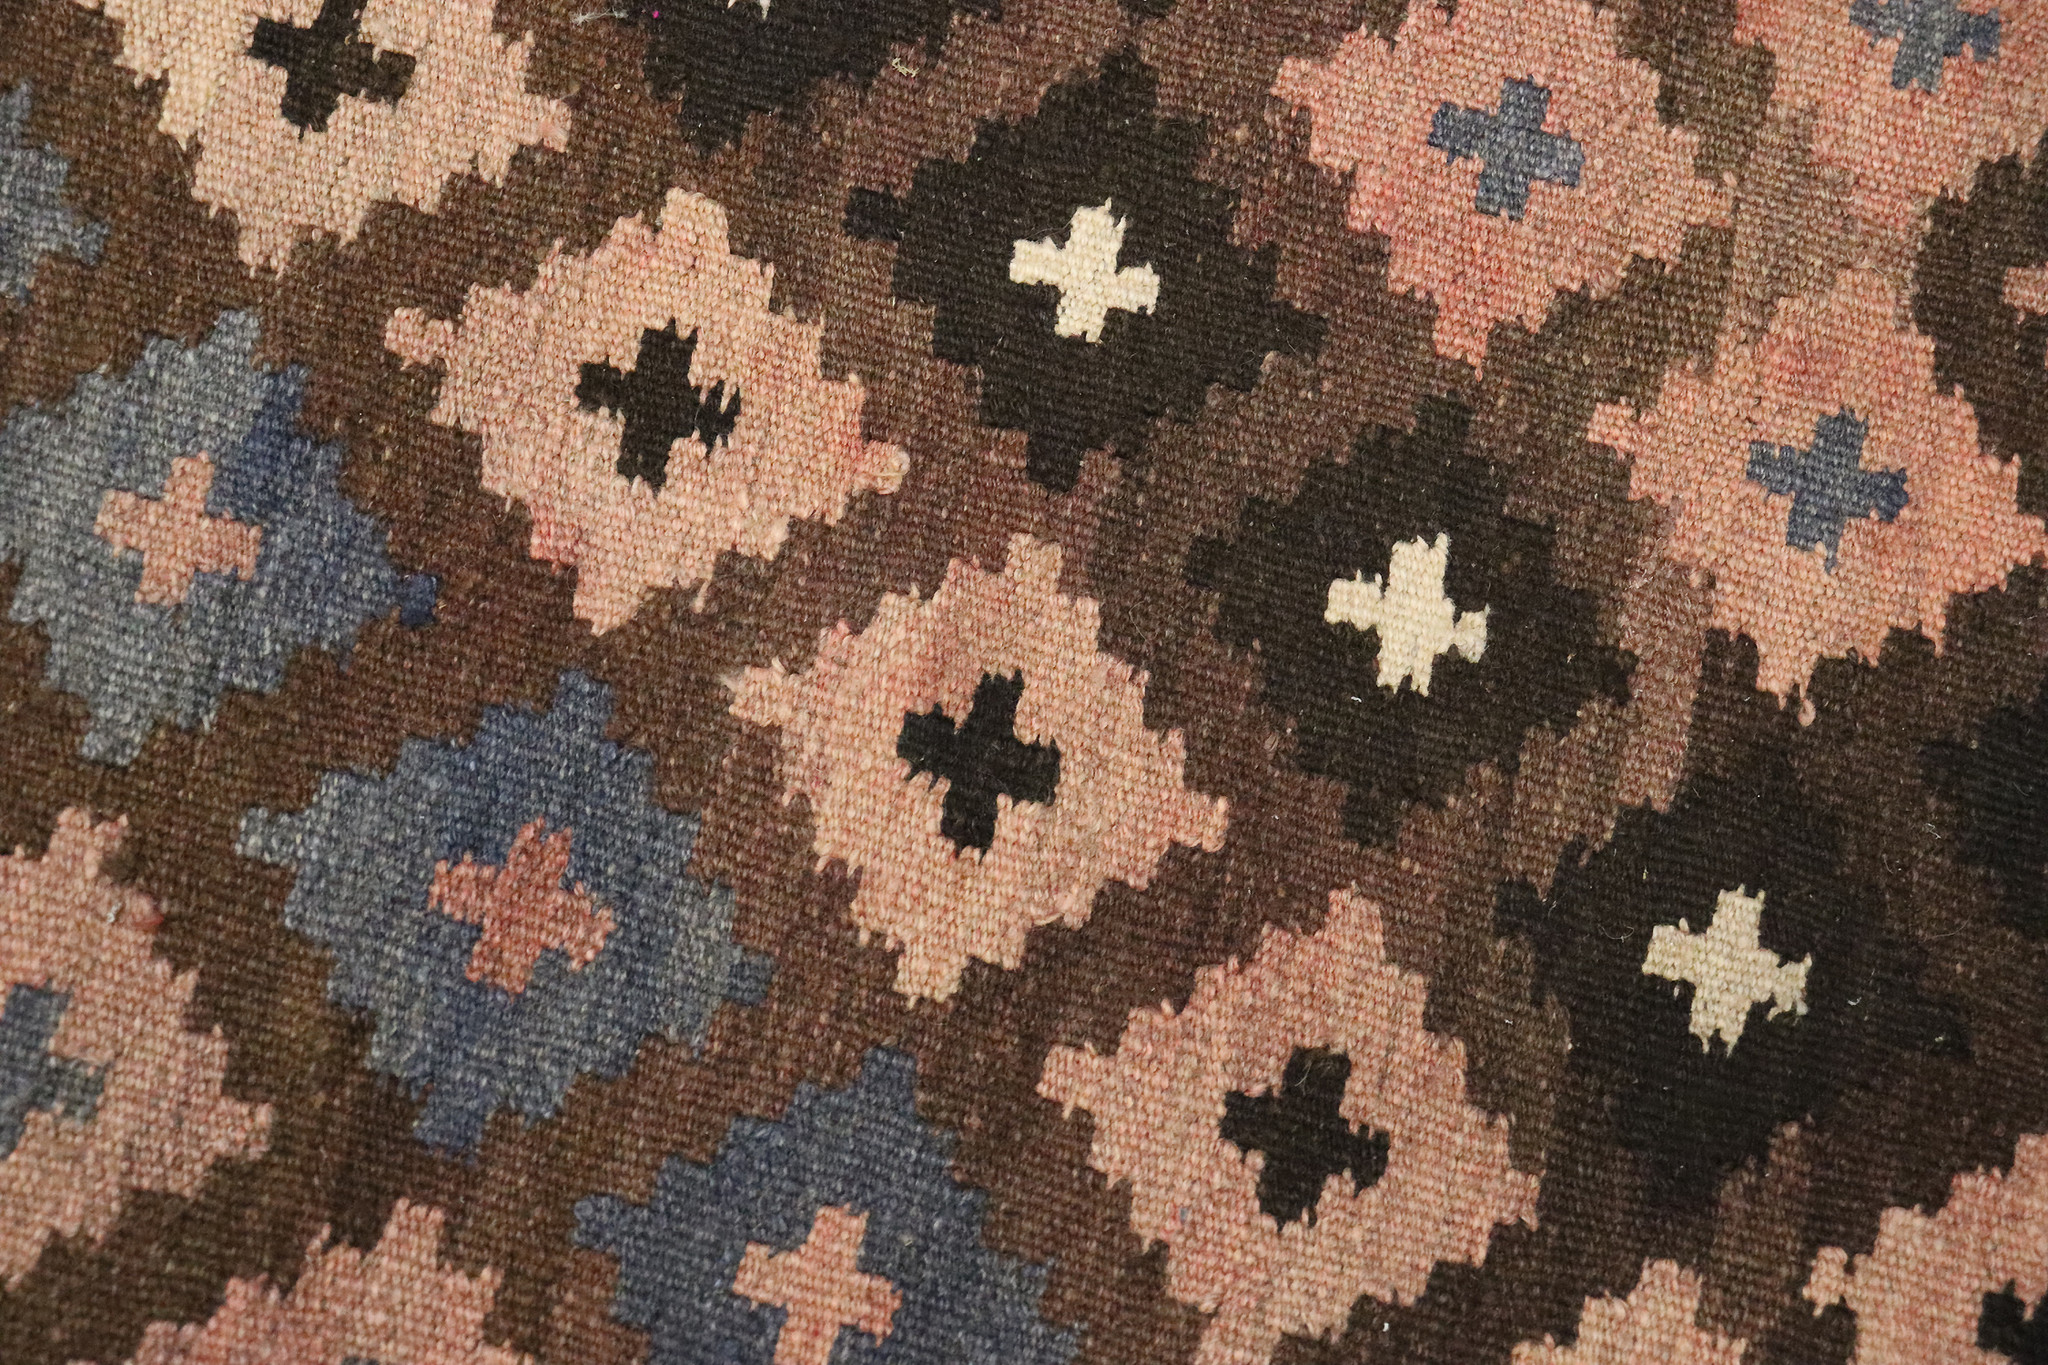 310x210    cm Afghan natural colors nomadic Kilim rug  No:    - 309